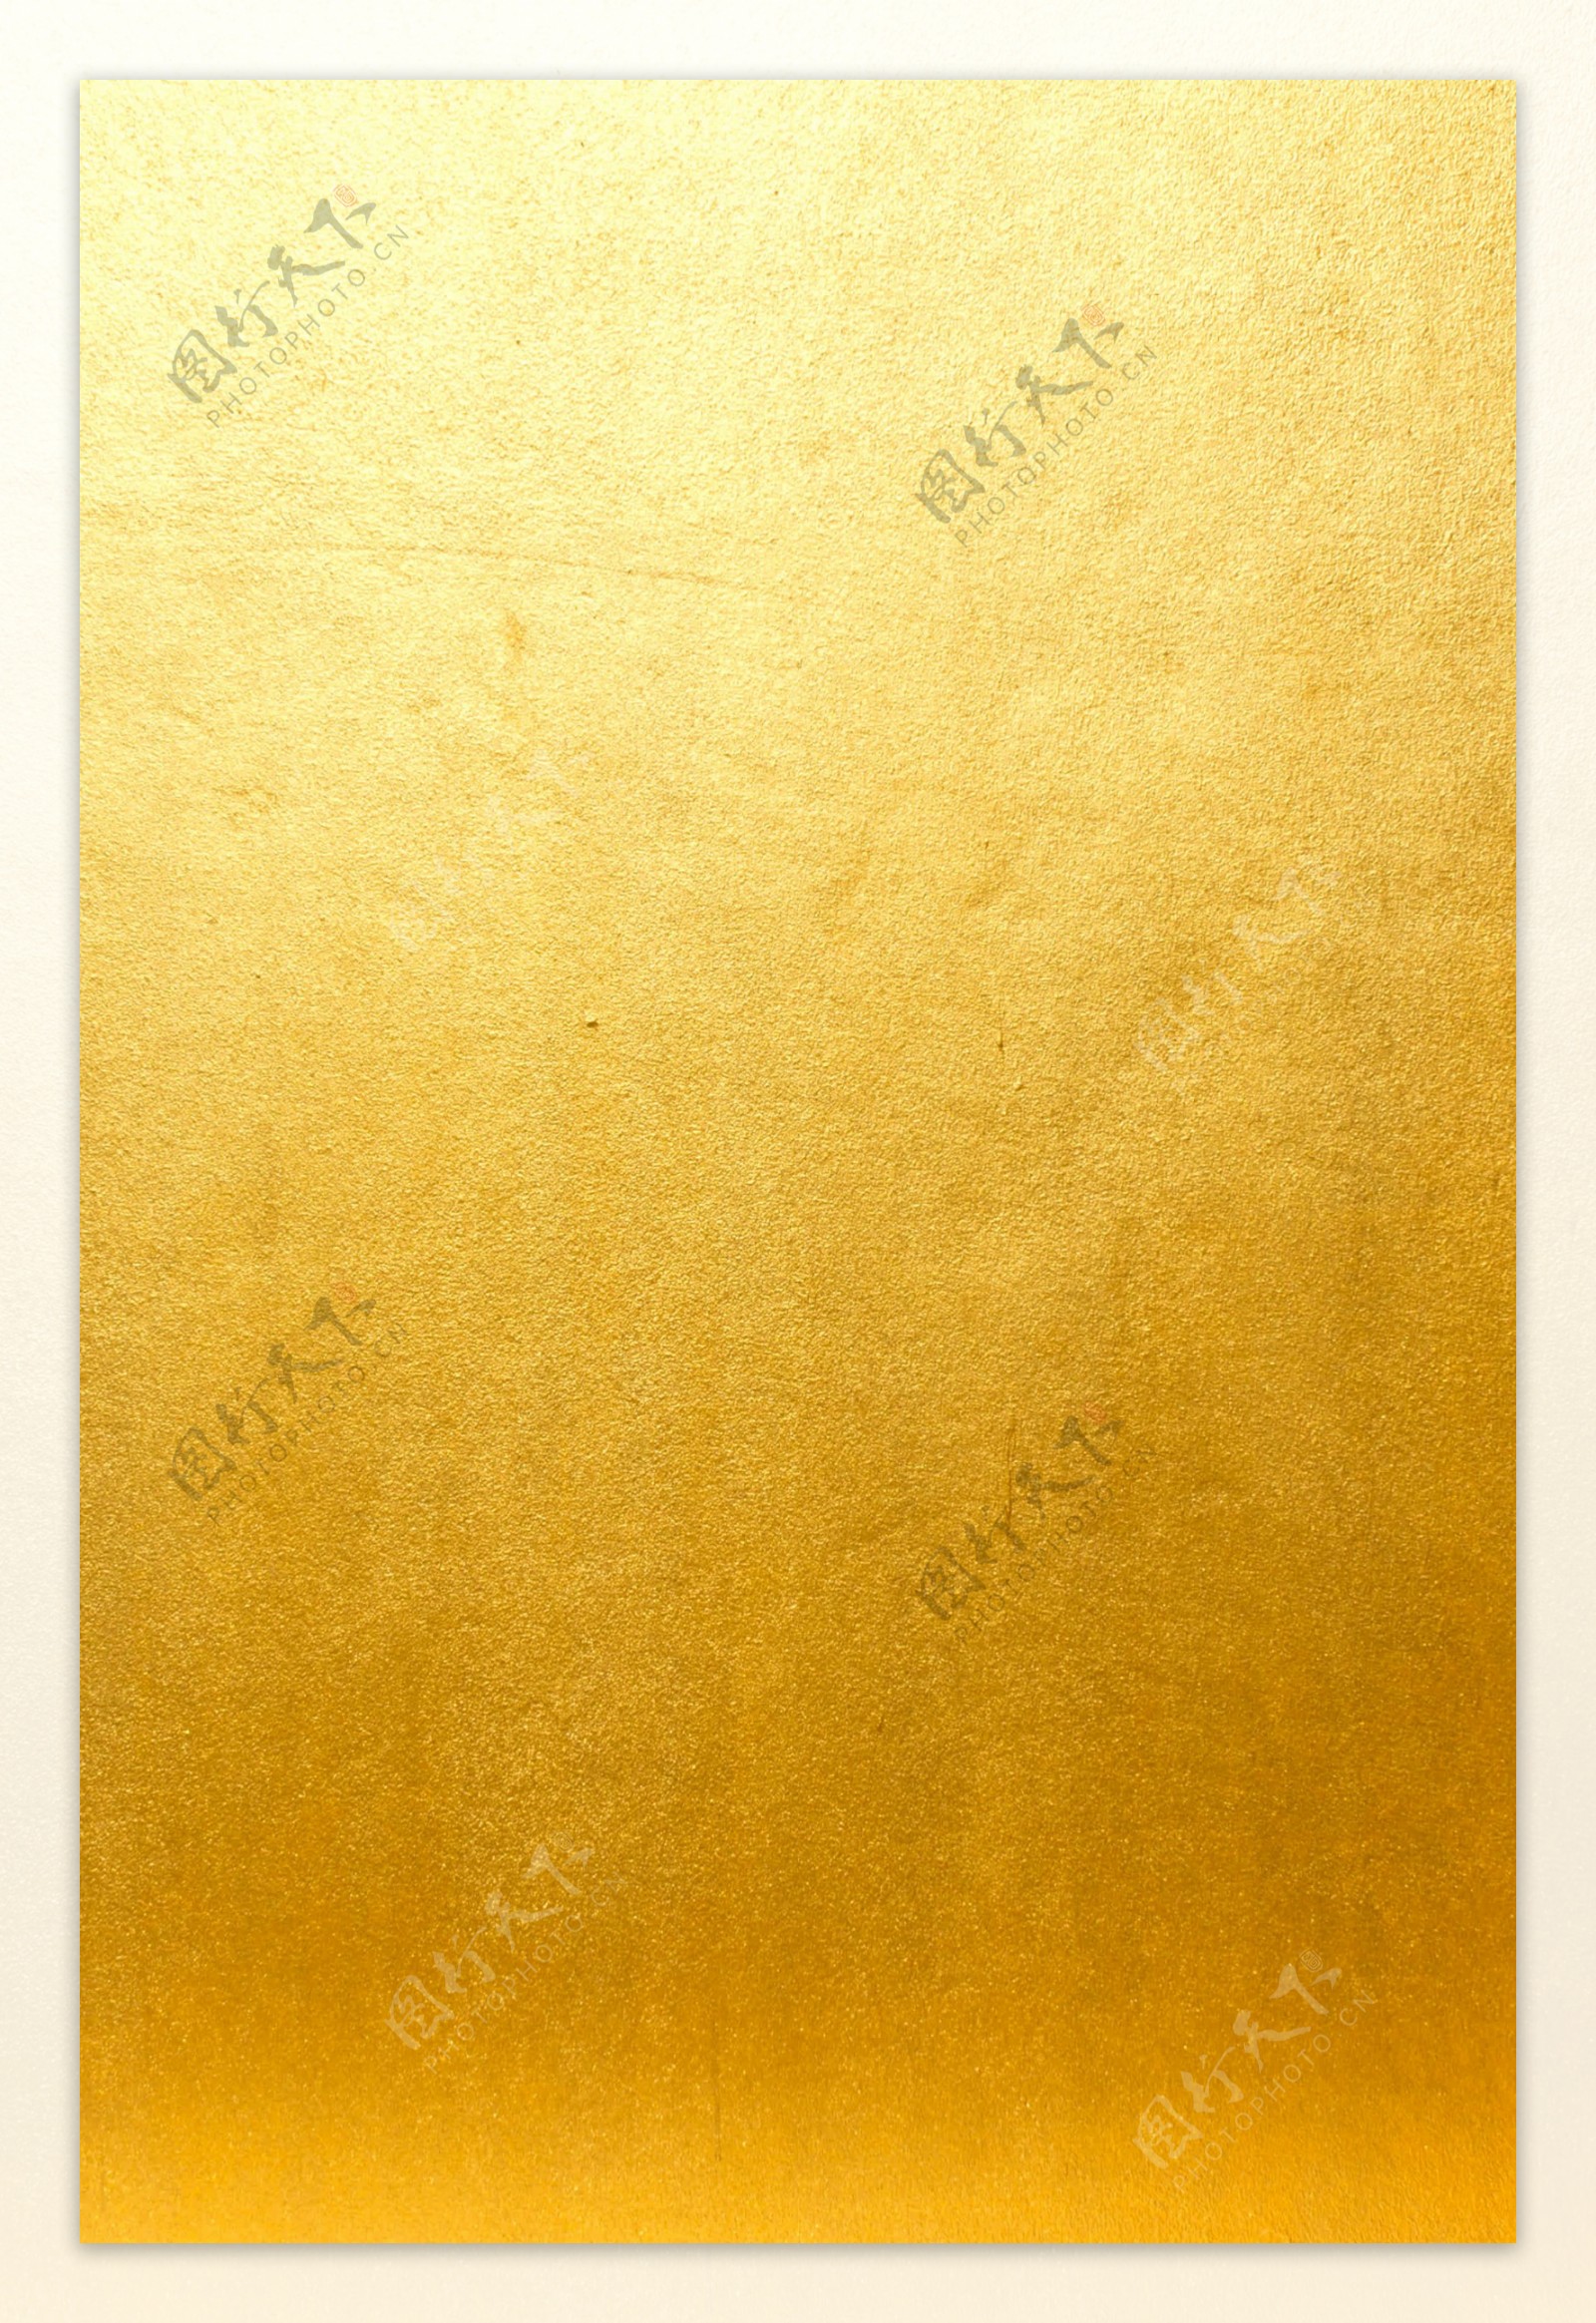 金色背景金色墙壁金属大合集图片